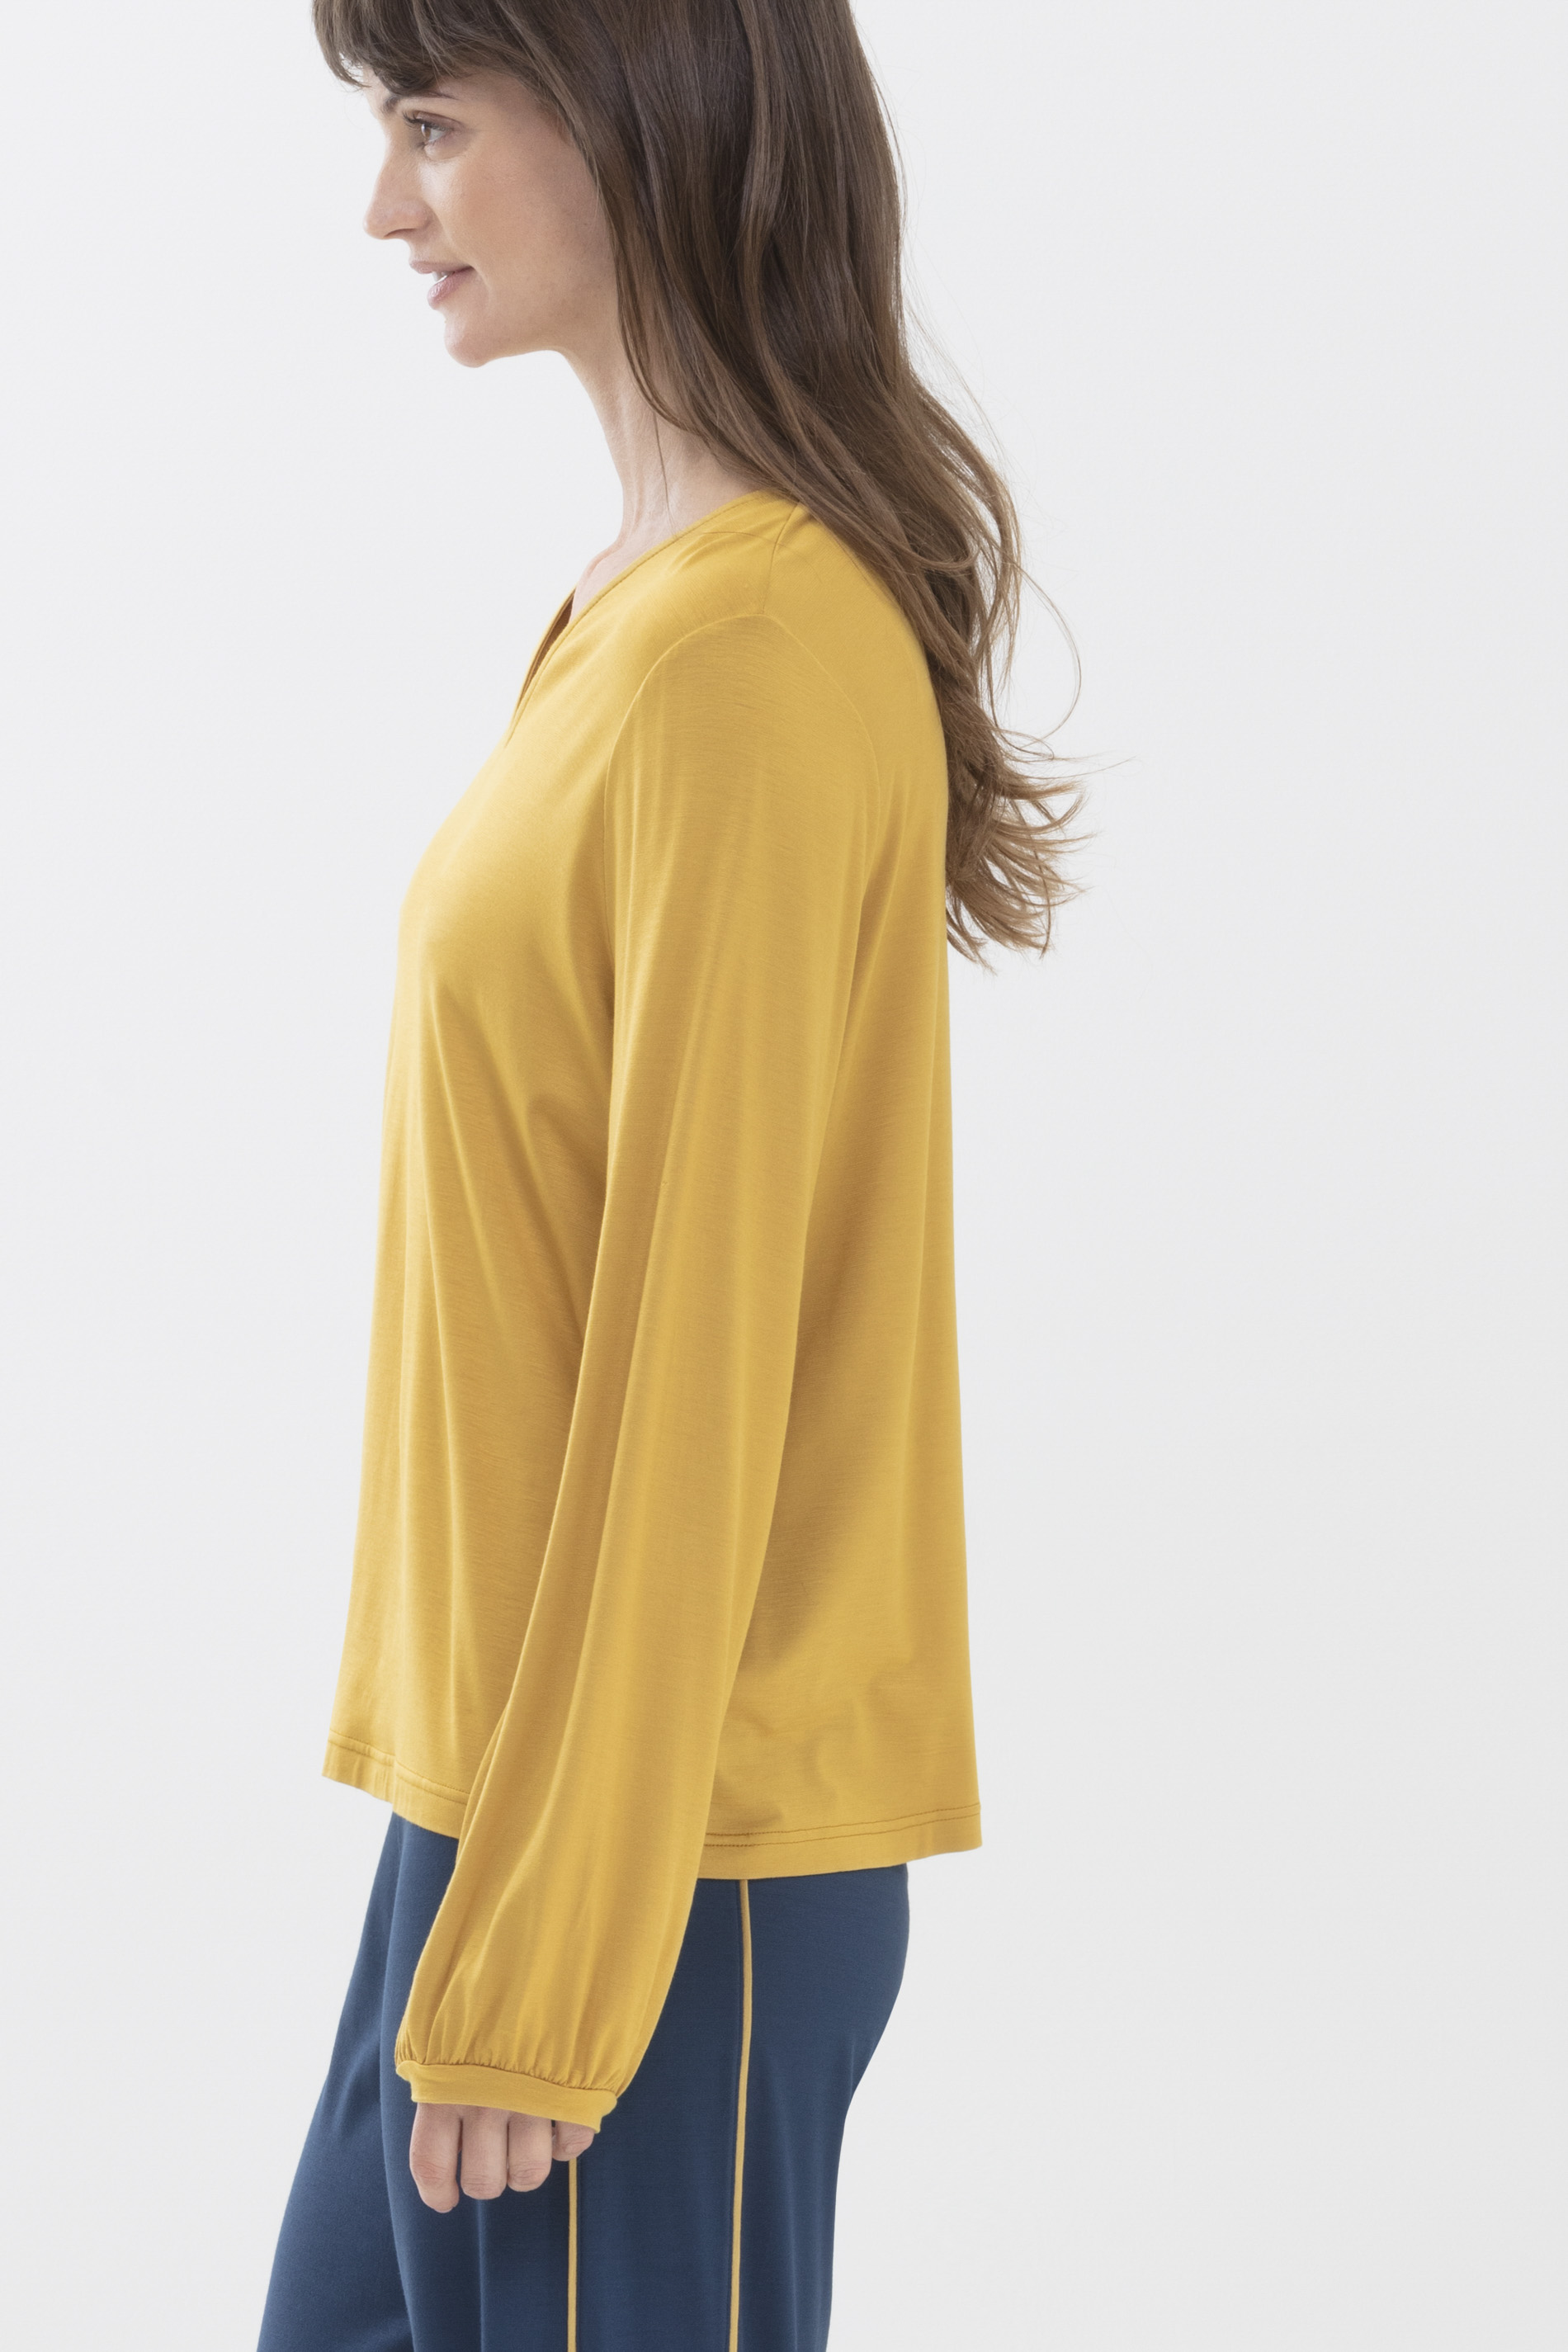 Shirt Wintergold Serie Alena Detailansicht 02 | mey®